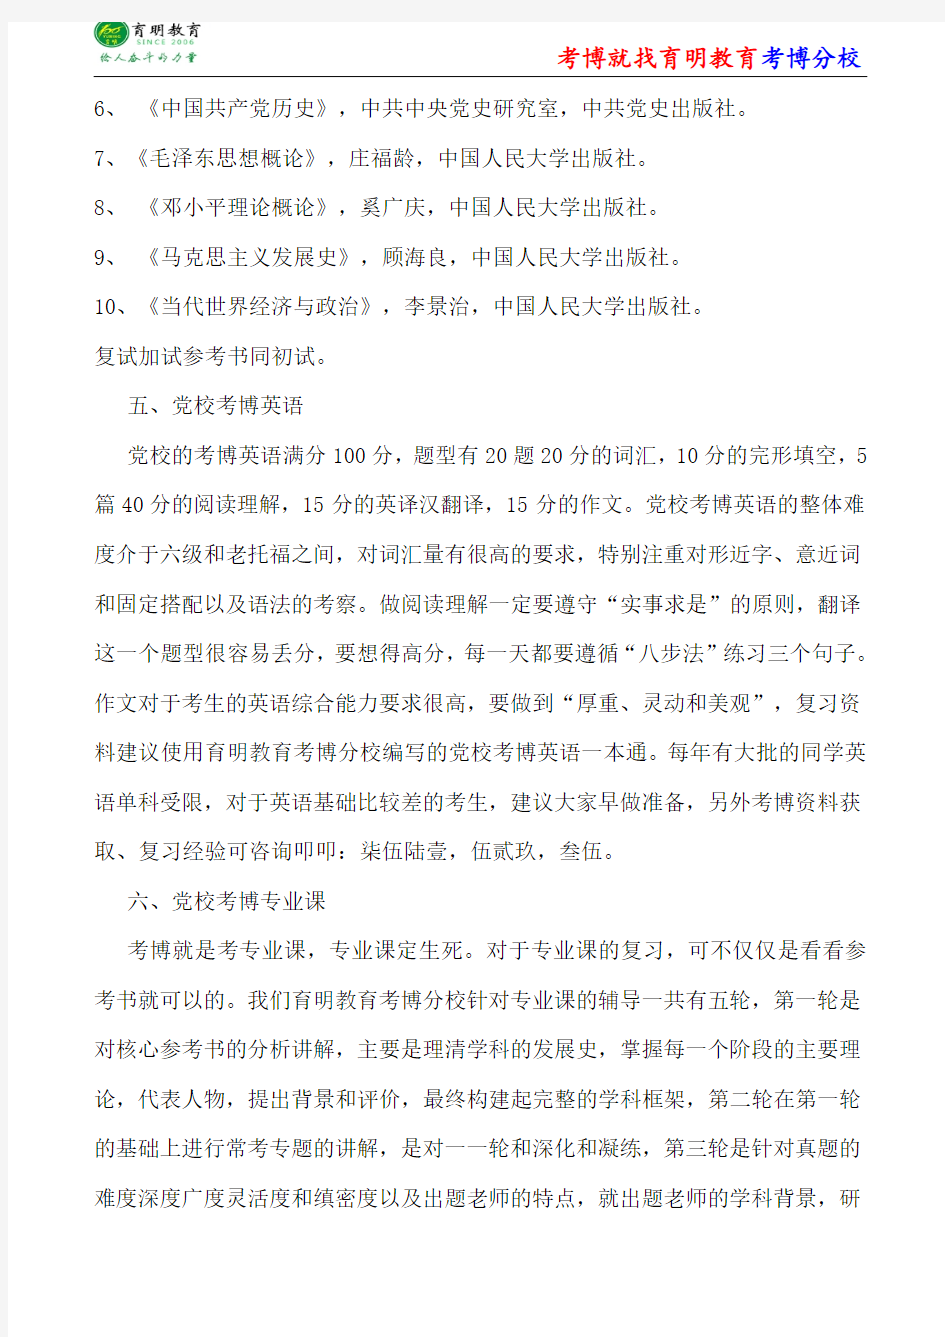 中共中央党校中国近现代史基本问题研究考博笔记-考博重点-考博经验